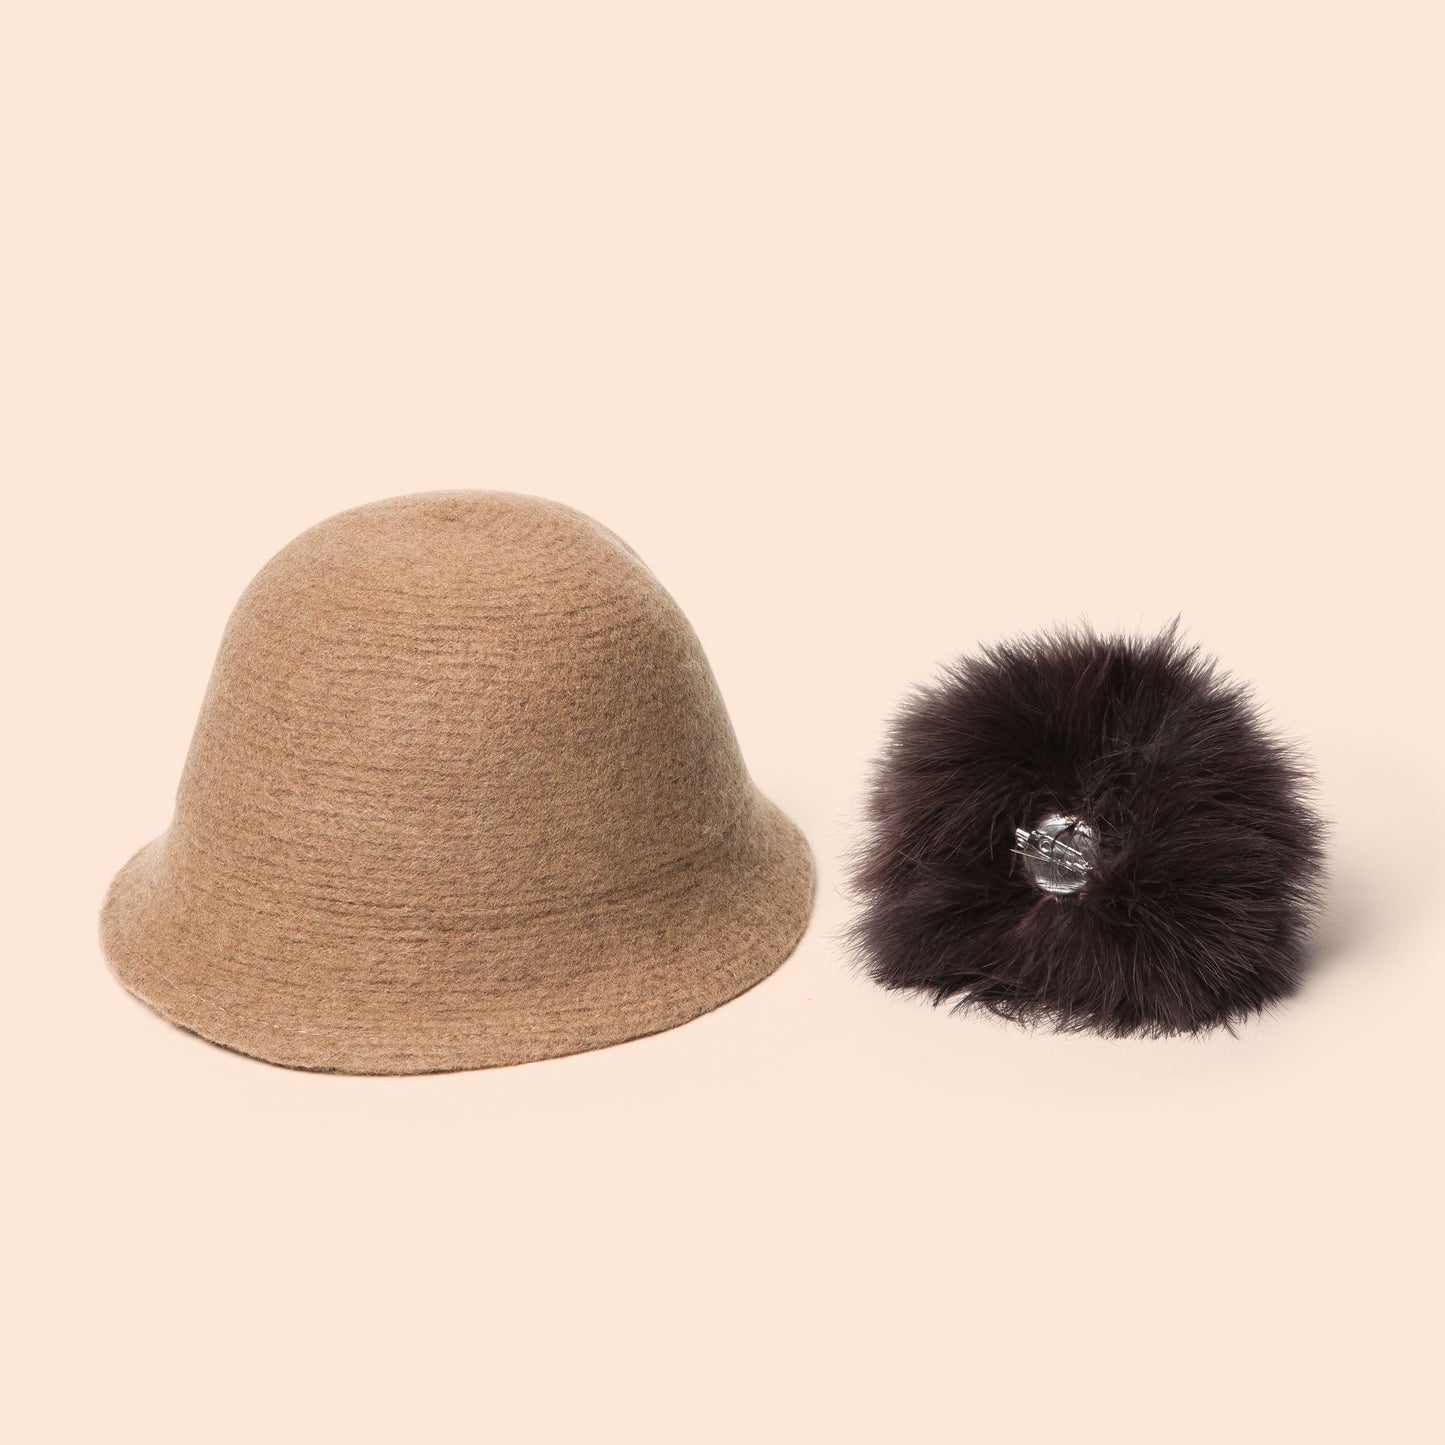 Pompom Wool Cloche Hat (Tan) detachable pom pom